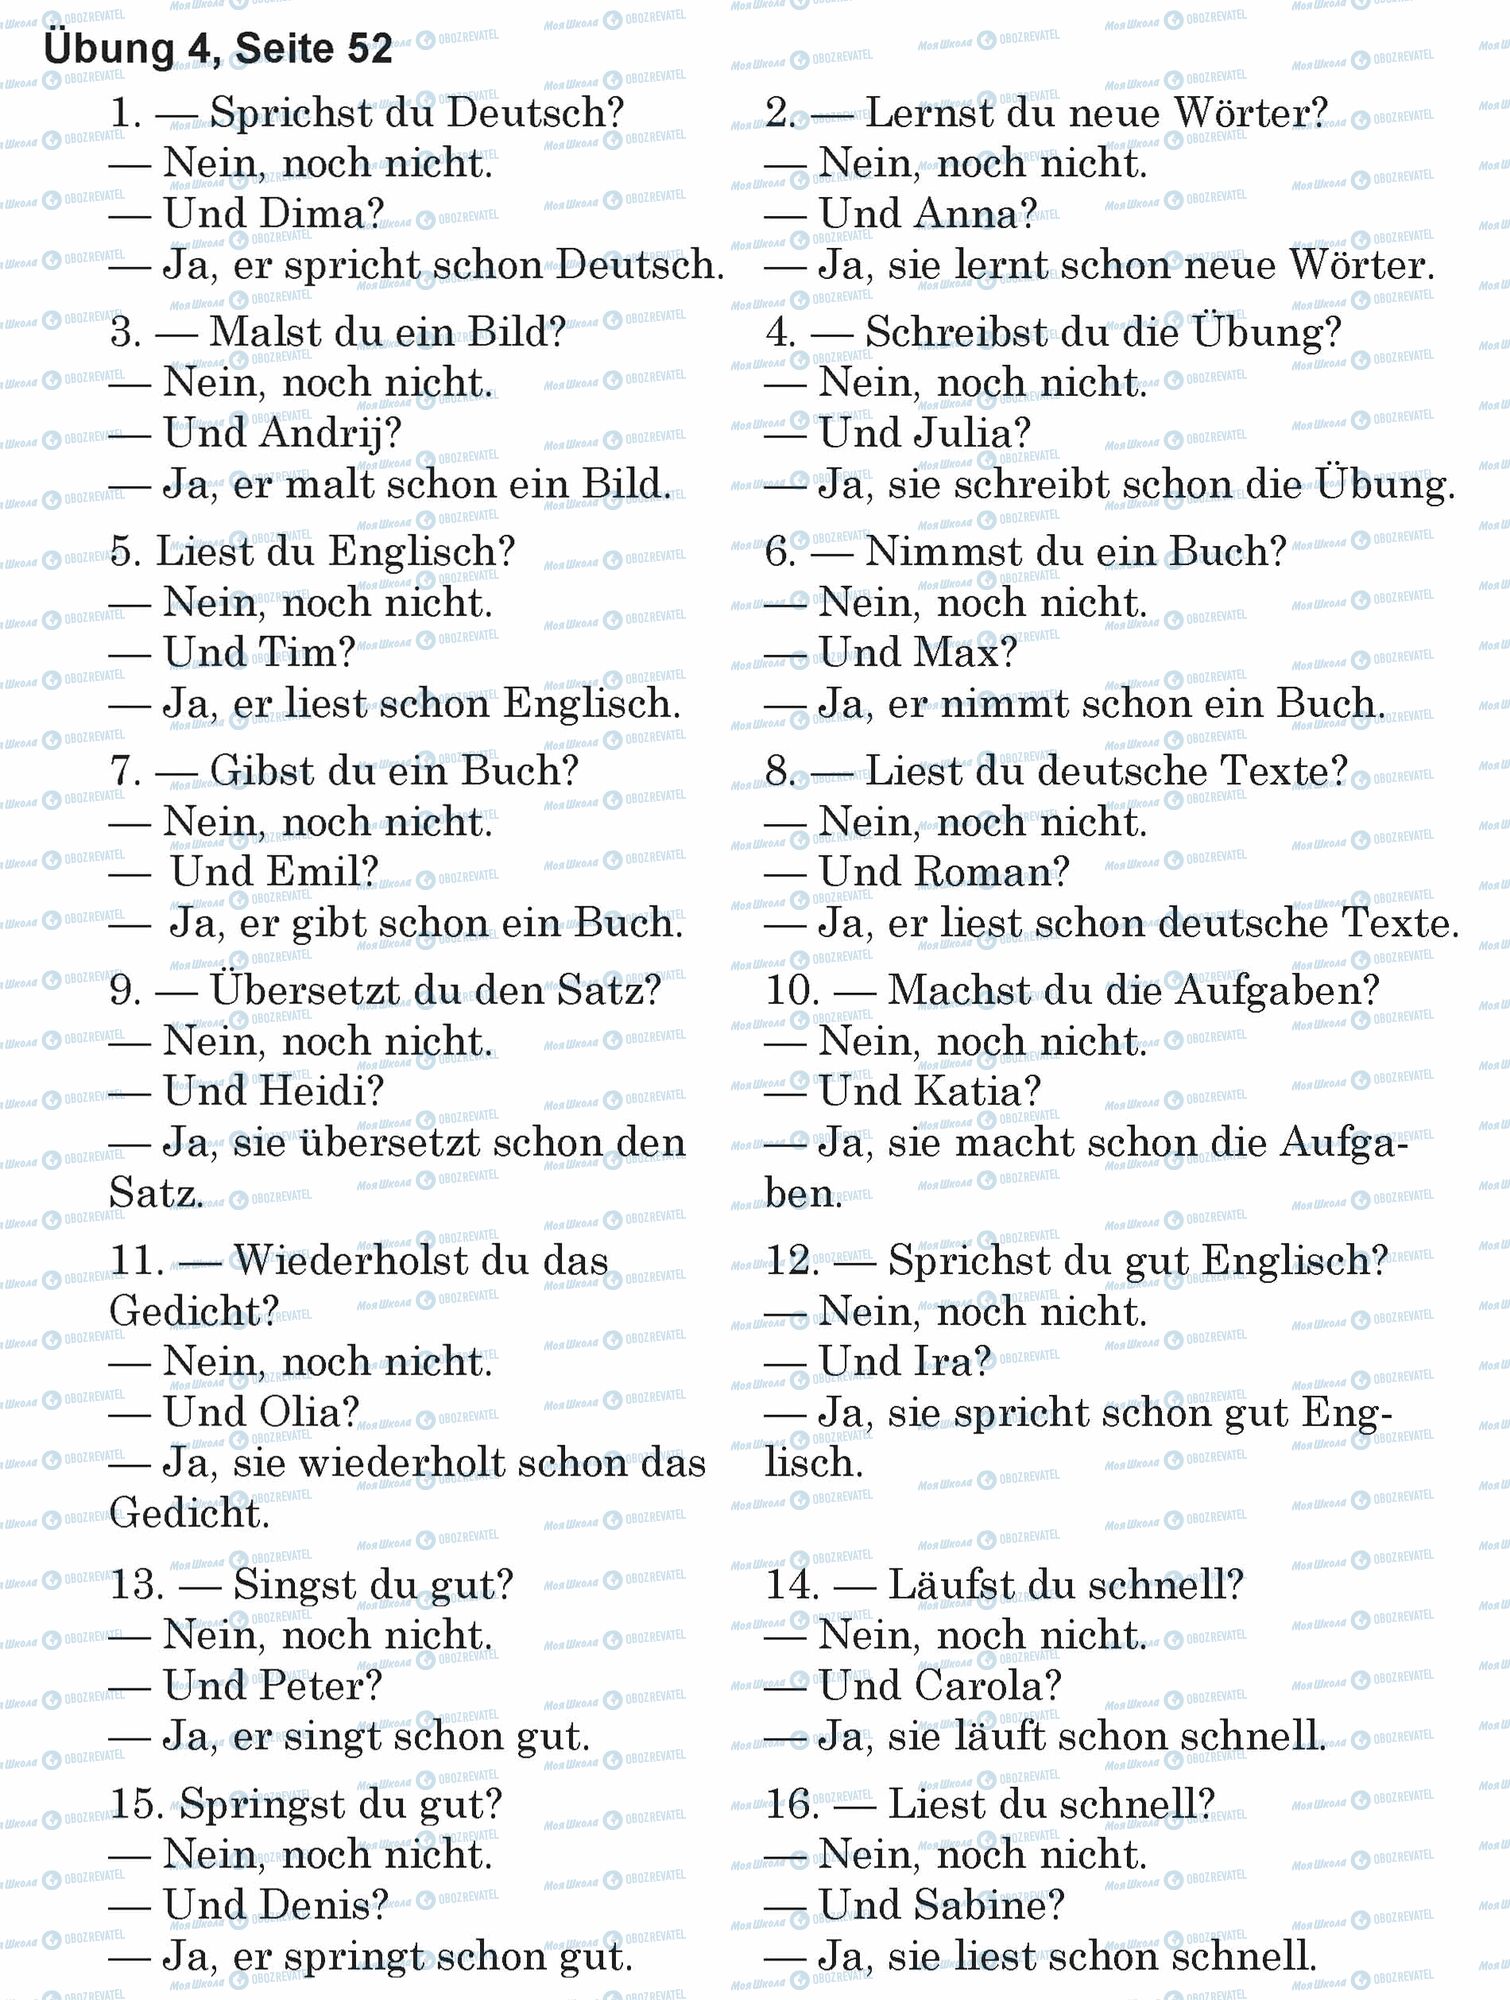 ГДЗ Немецкий язык 5 класс страница Ubung 4, Seite 52